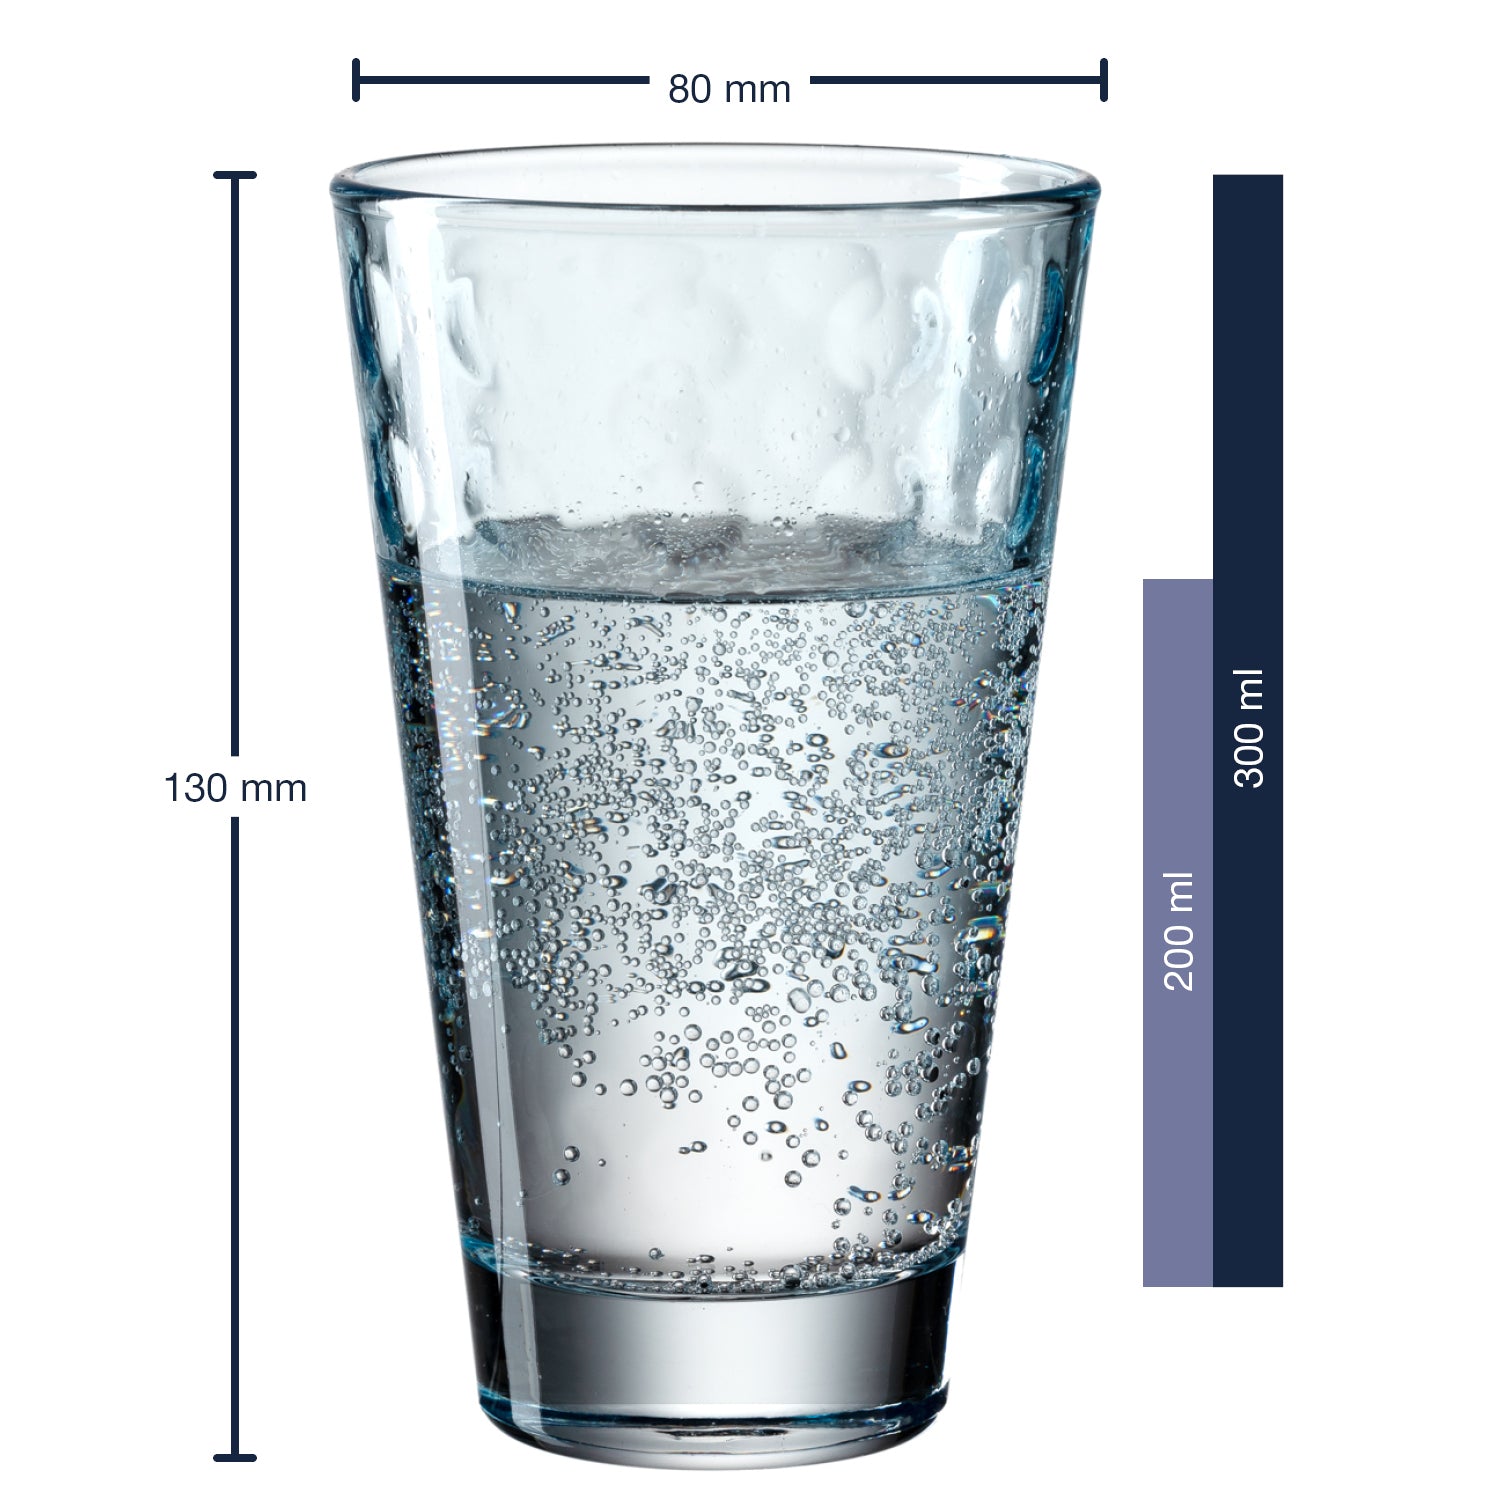 Trinkglas OPTIC 6er-Set 300 ml hellblau